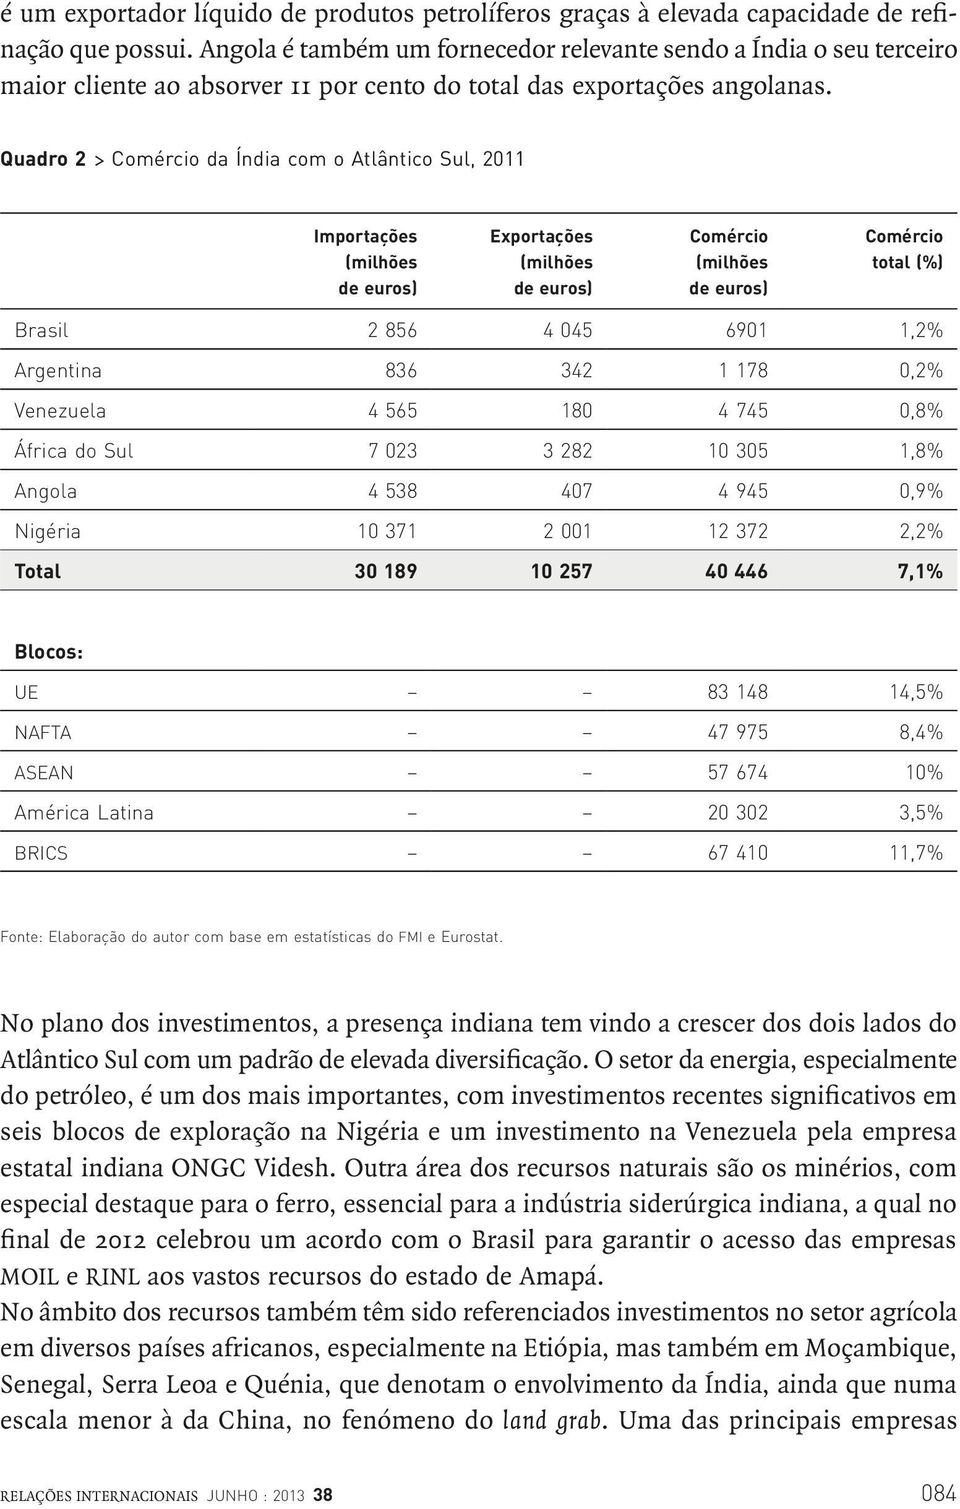 Quadro 2 > Comércio da Índia com o Atlântico Sul, 2011 Importações (milhões de euros) Exportações (milhões de euros) Comércio (milhões de euros) Comércio total (%) Brasil 2 856 4 045 6901 1,2%